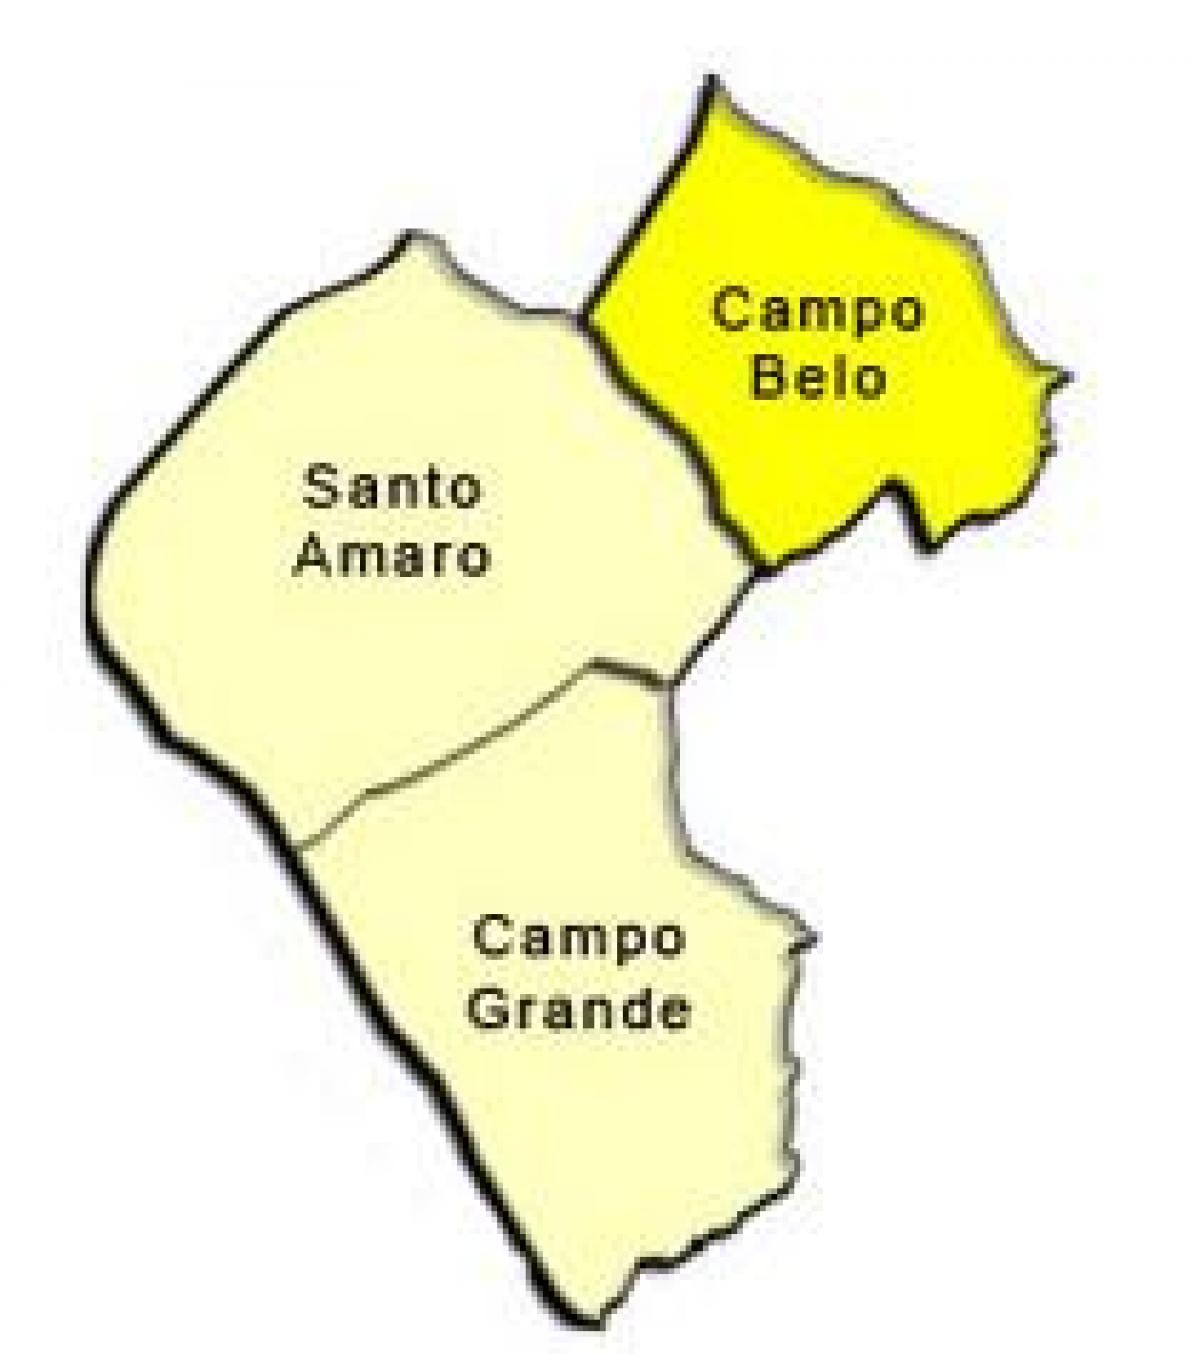 नक्शे के सॅंटो अमरो में उप-प्रान्त